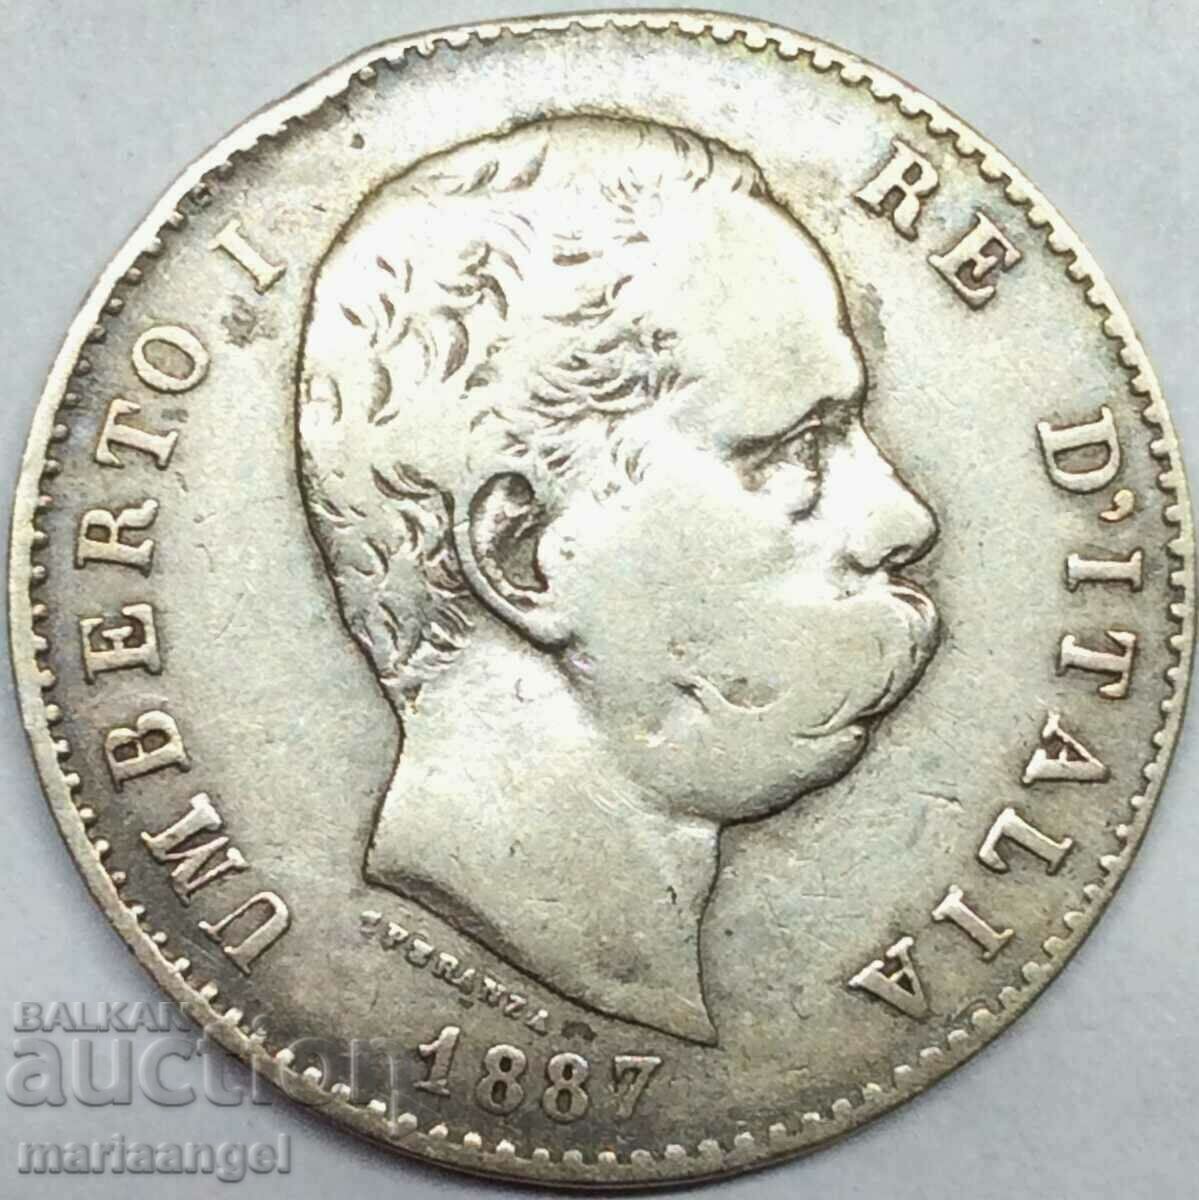 1 лира 1887 Италия Умберто I сребро